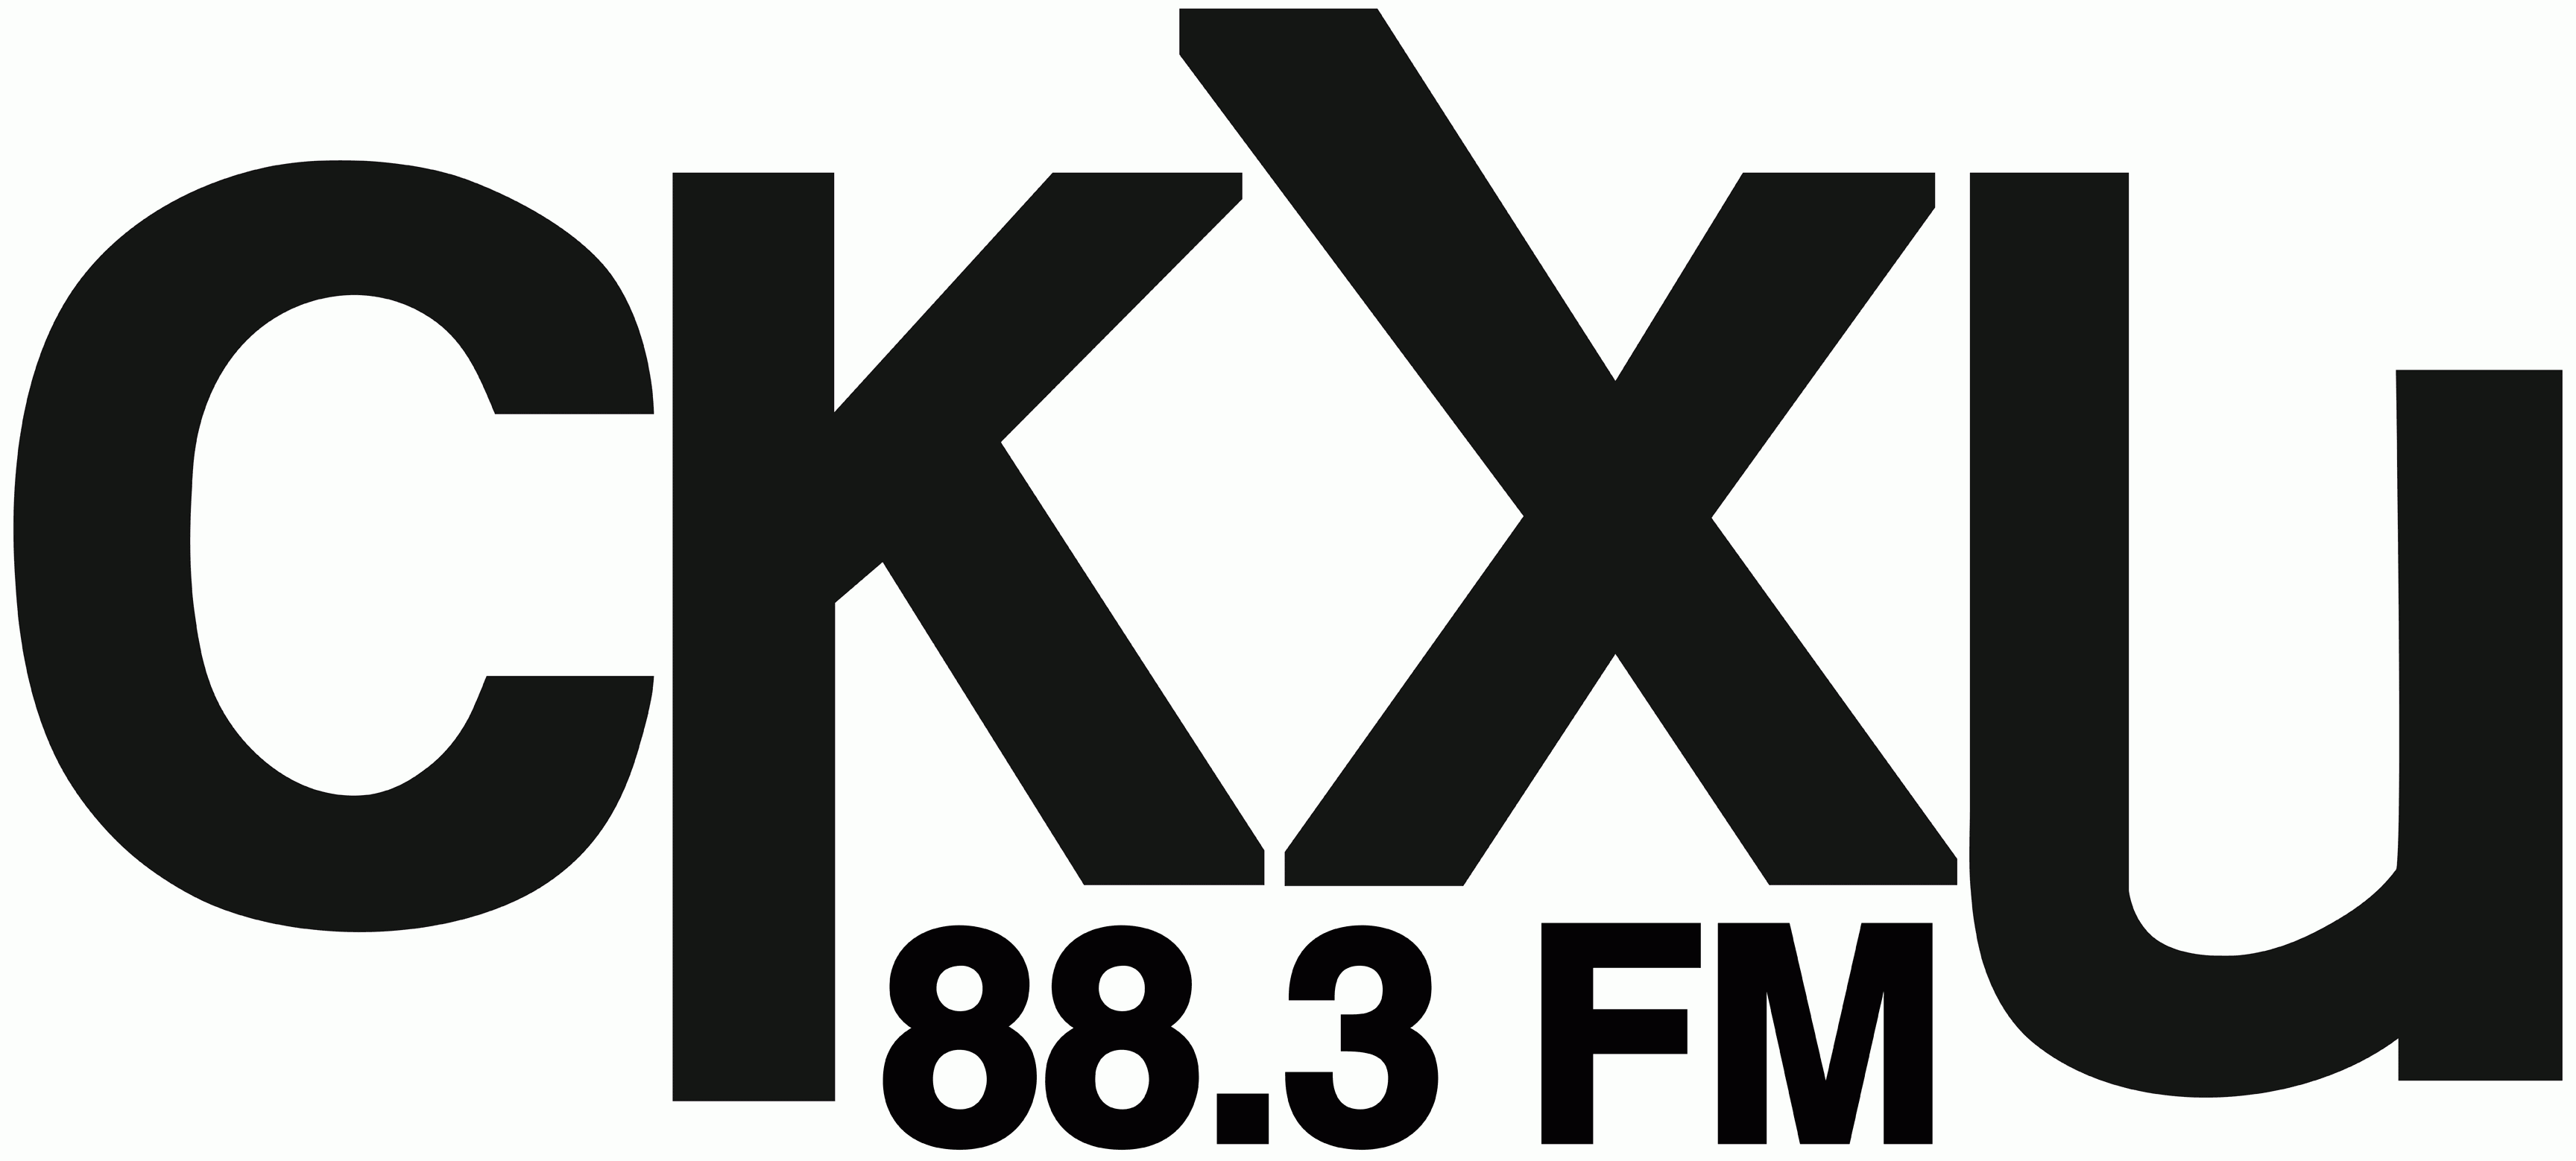 CKXU Radio Society